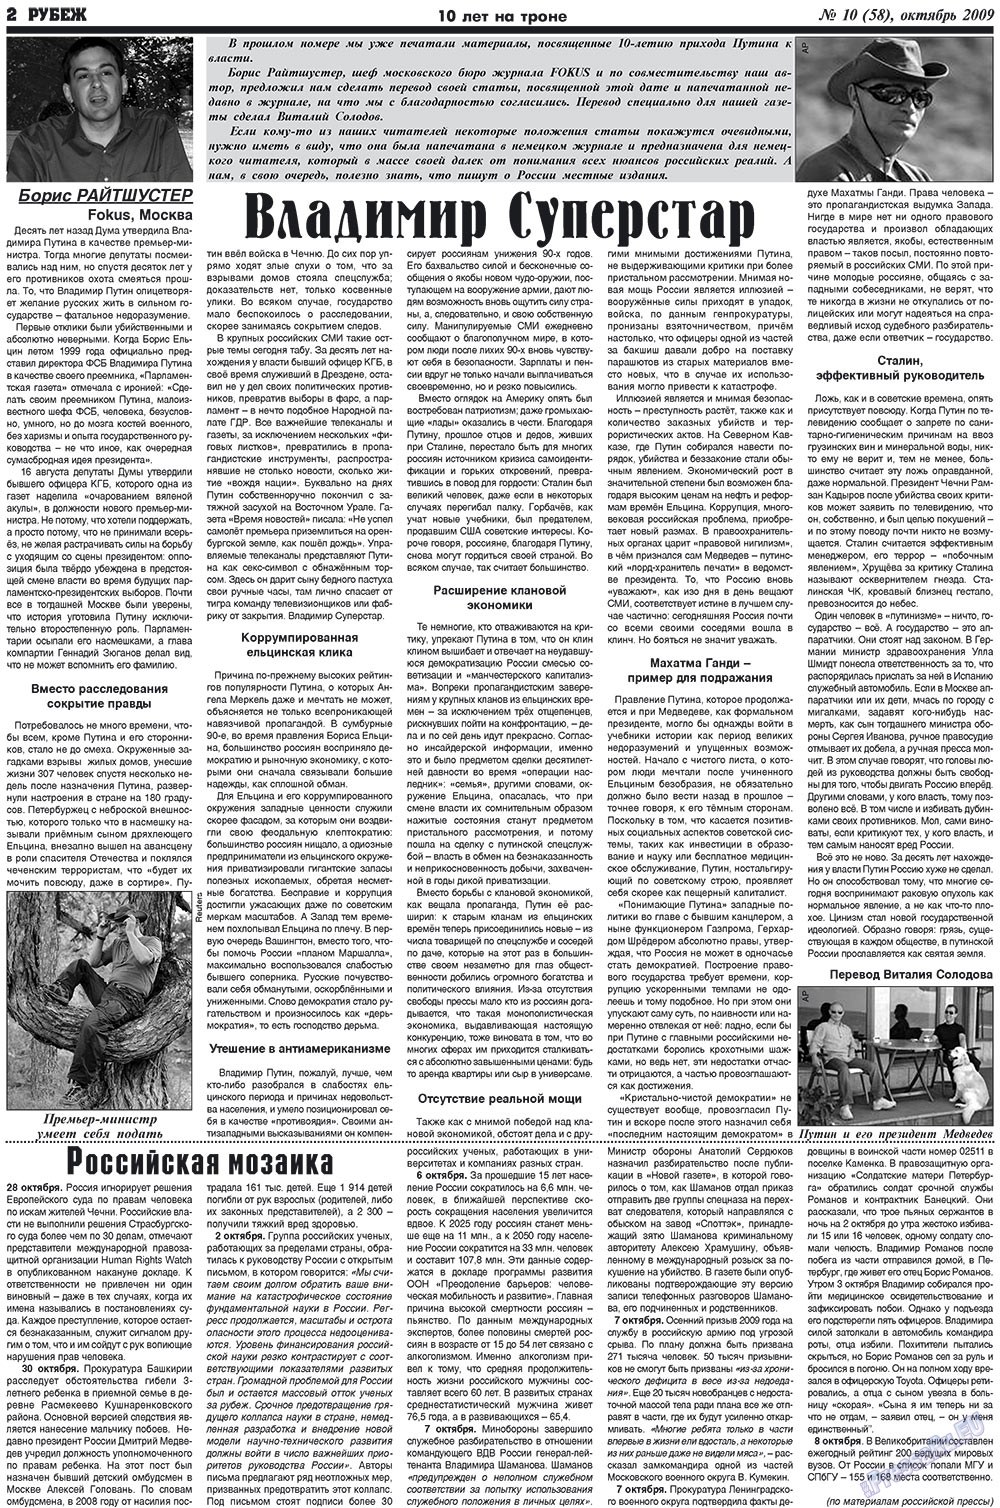 Рубеж (газета). 2009 год, номер 10, стр. 2